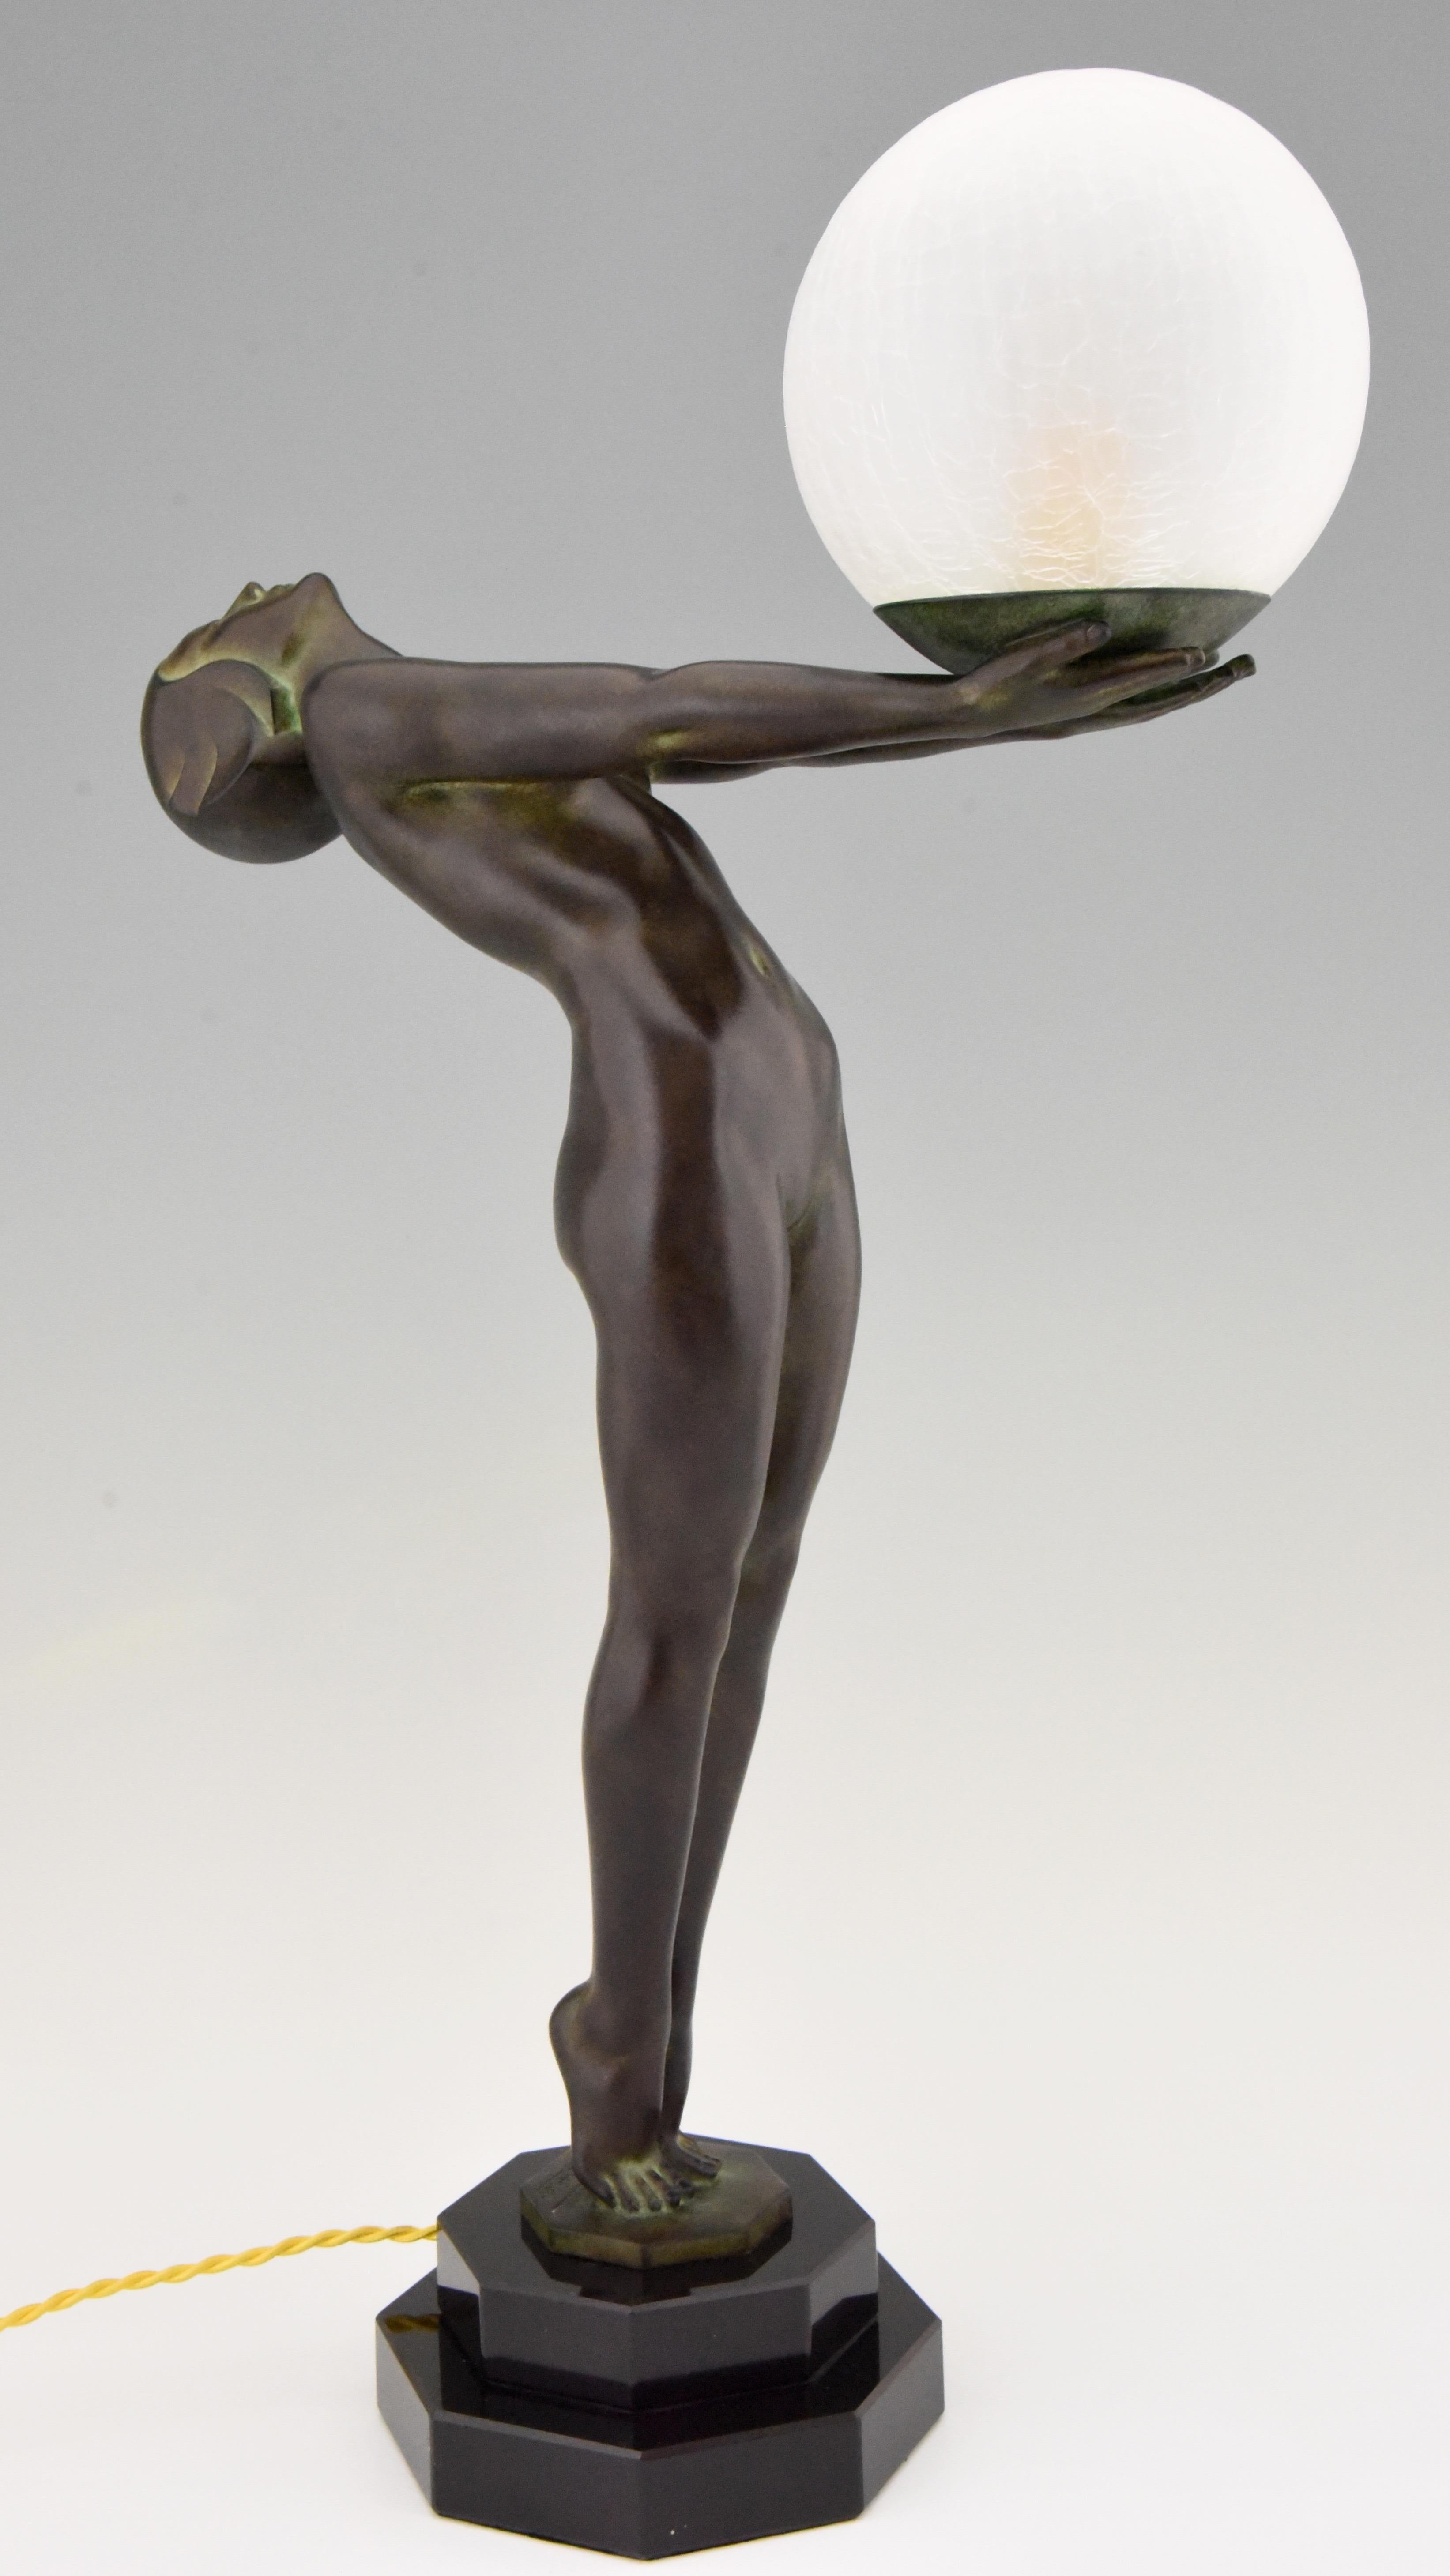 Art Deco Stil Lampe Clarté Stehender Akt Skulptur Max Le Verrier H 25 in, 64 cm (Patiniert)